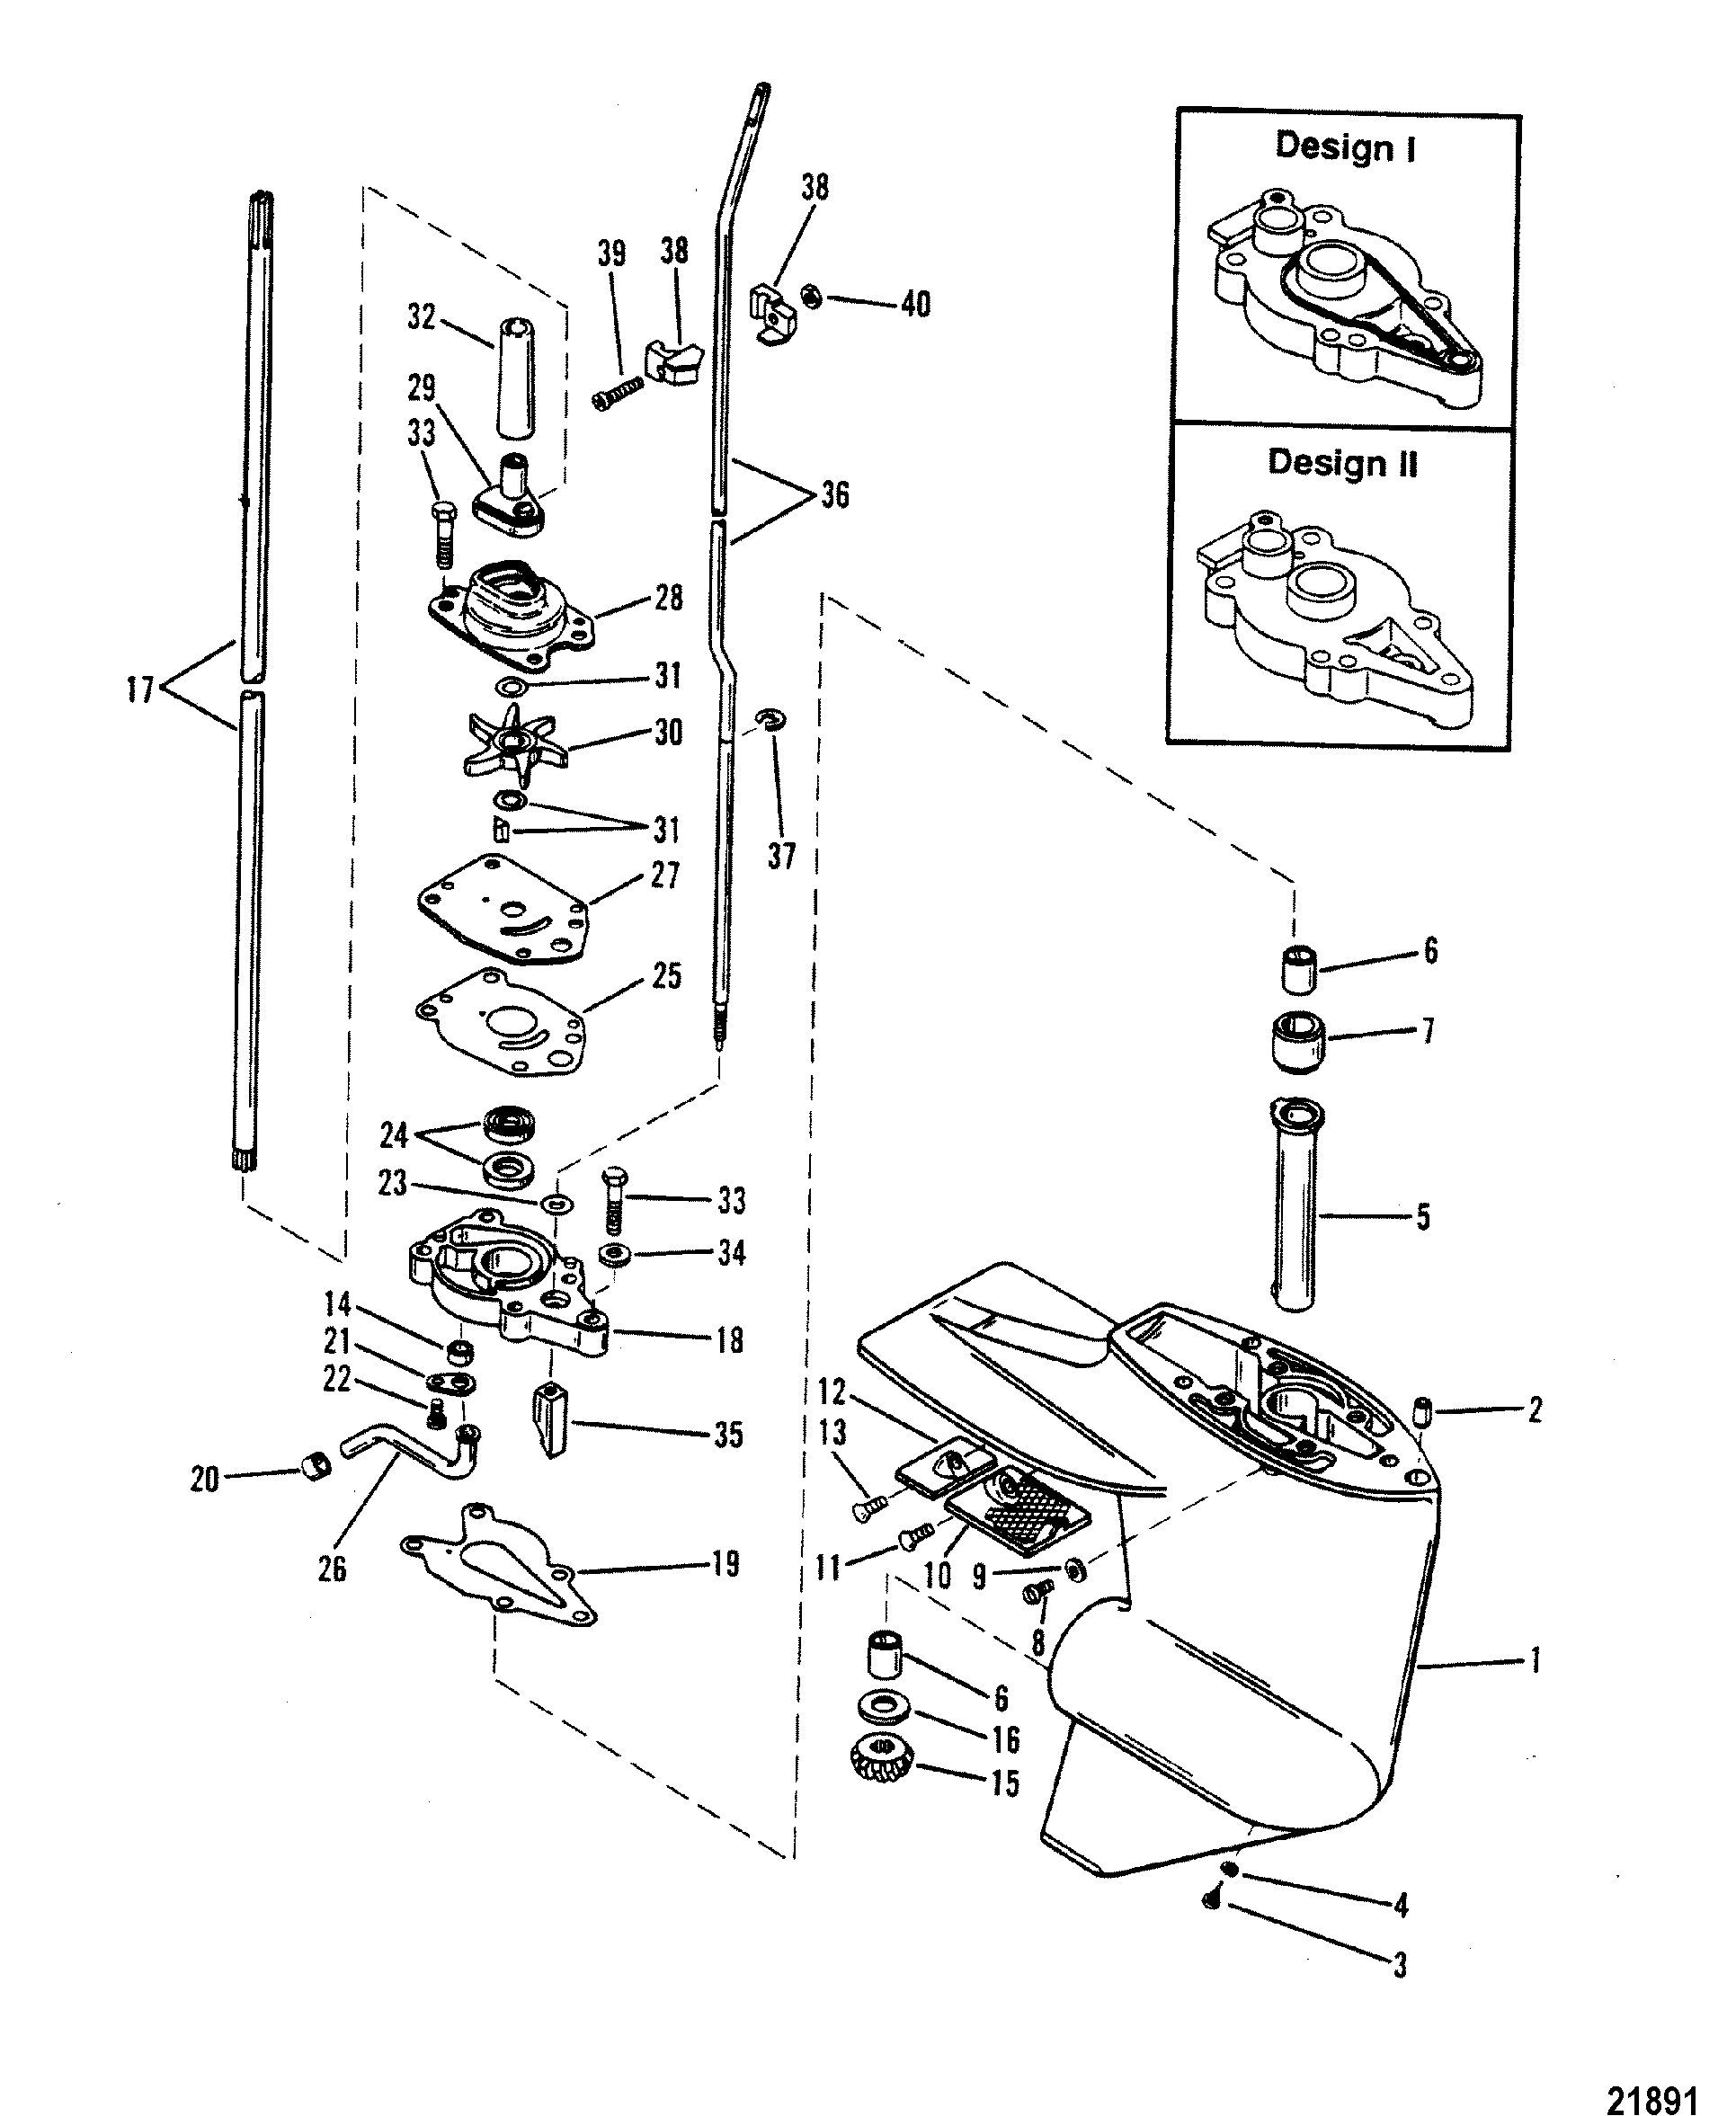 Gear Hsg(Driveshaft)(Design I-Refer to Reference #17)